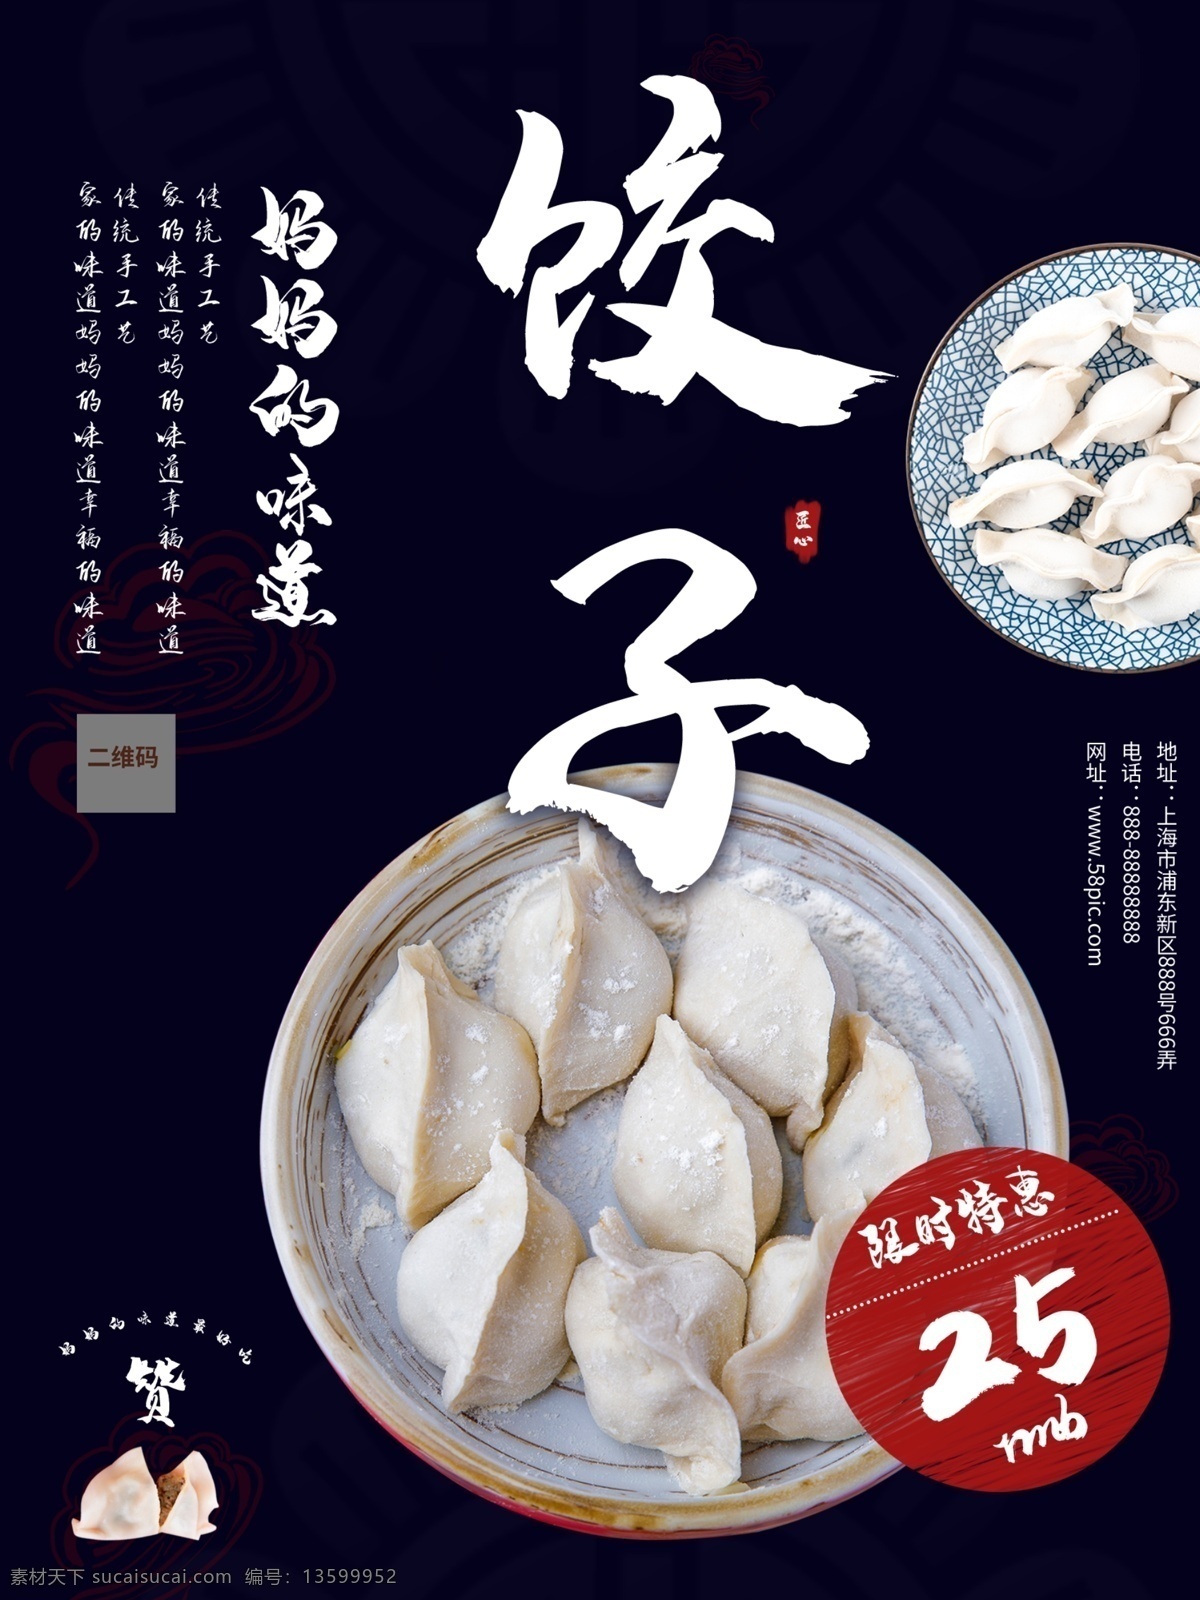 中国 风 传统 美食 饺子 促销 海 促销海报 大气 复古 高端 活动海报 简约 商业海报 食物 中国风